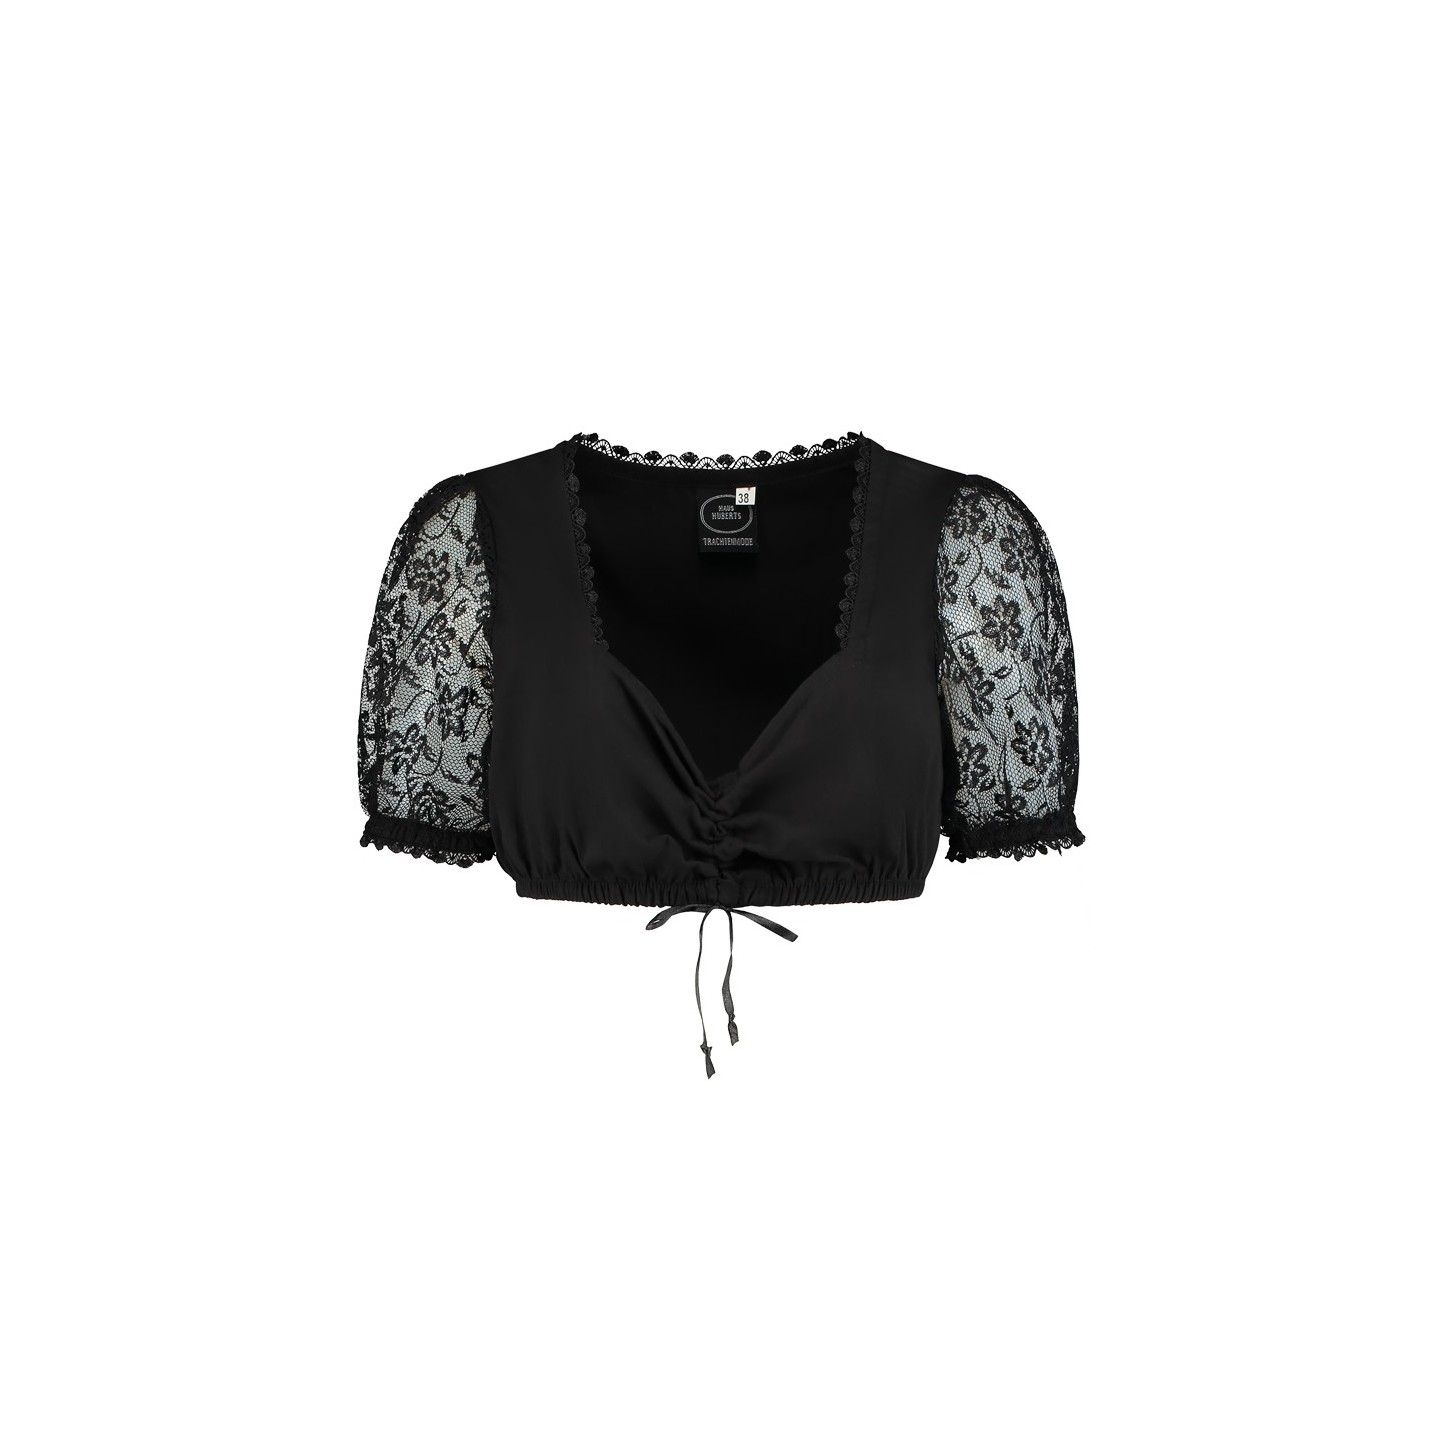 zwarte Dirndl blouse kant tiroler kledij